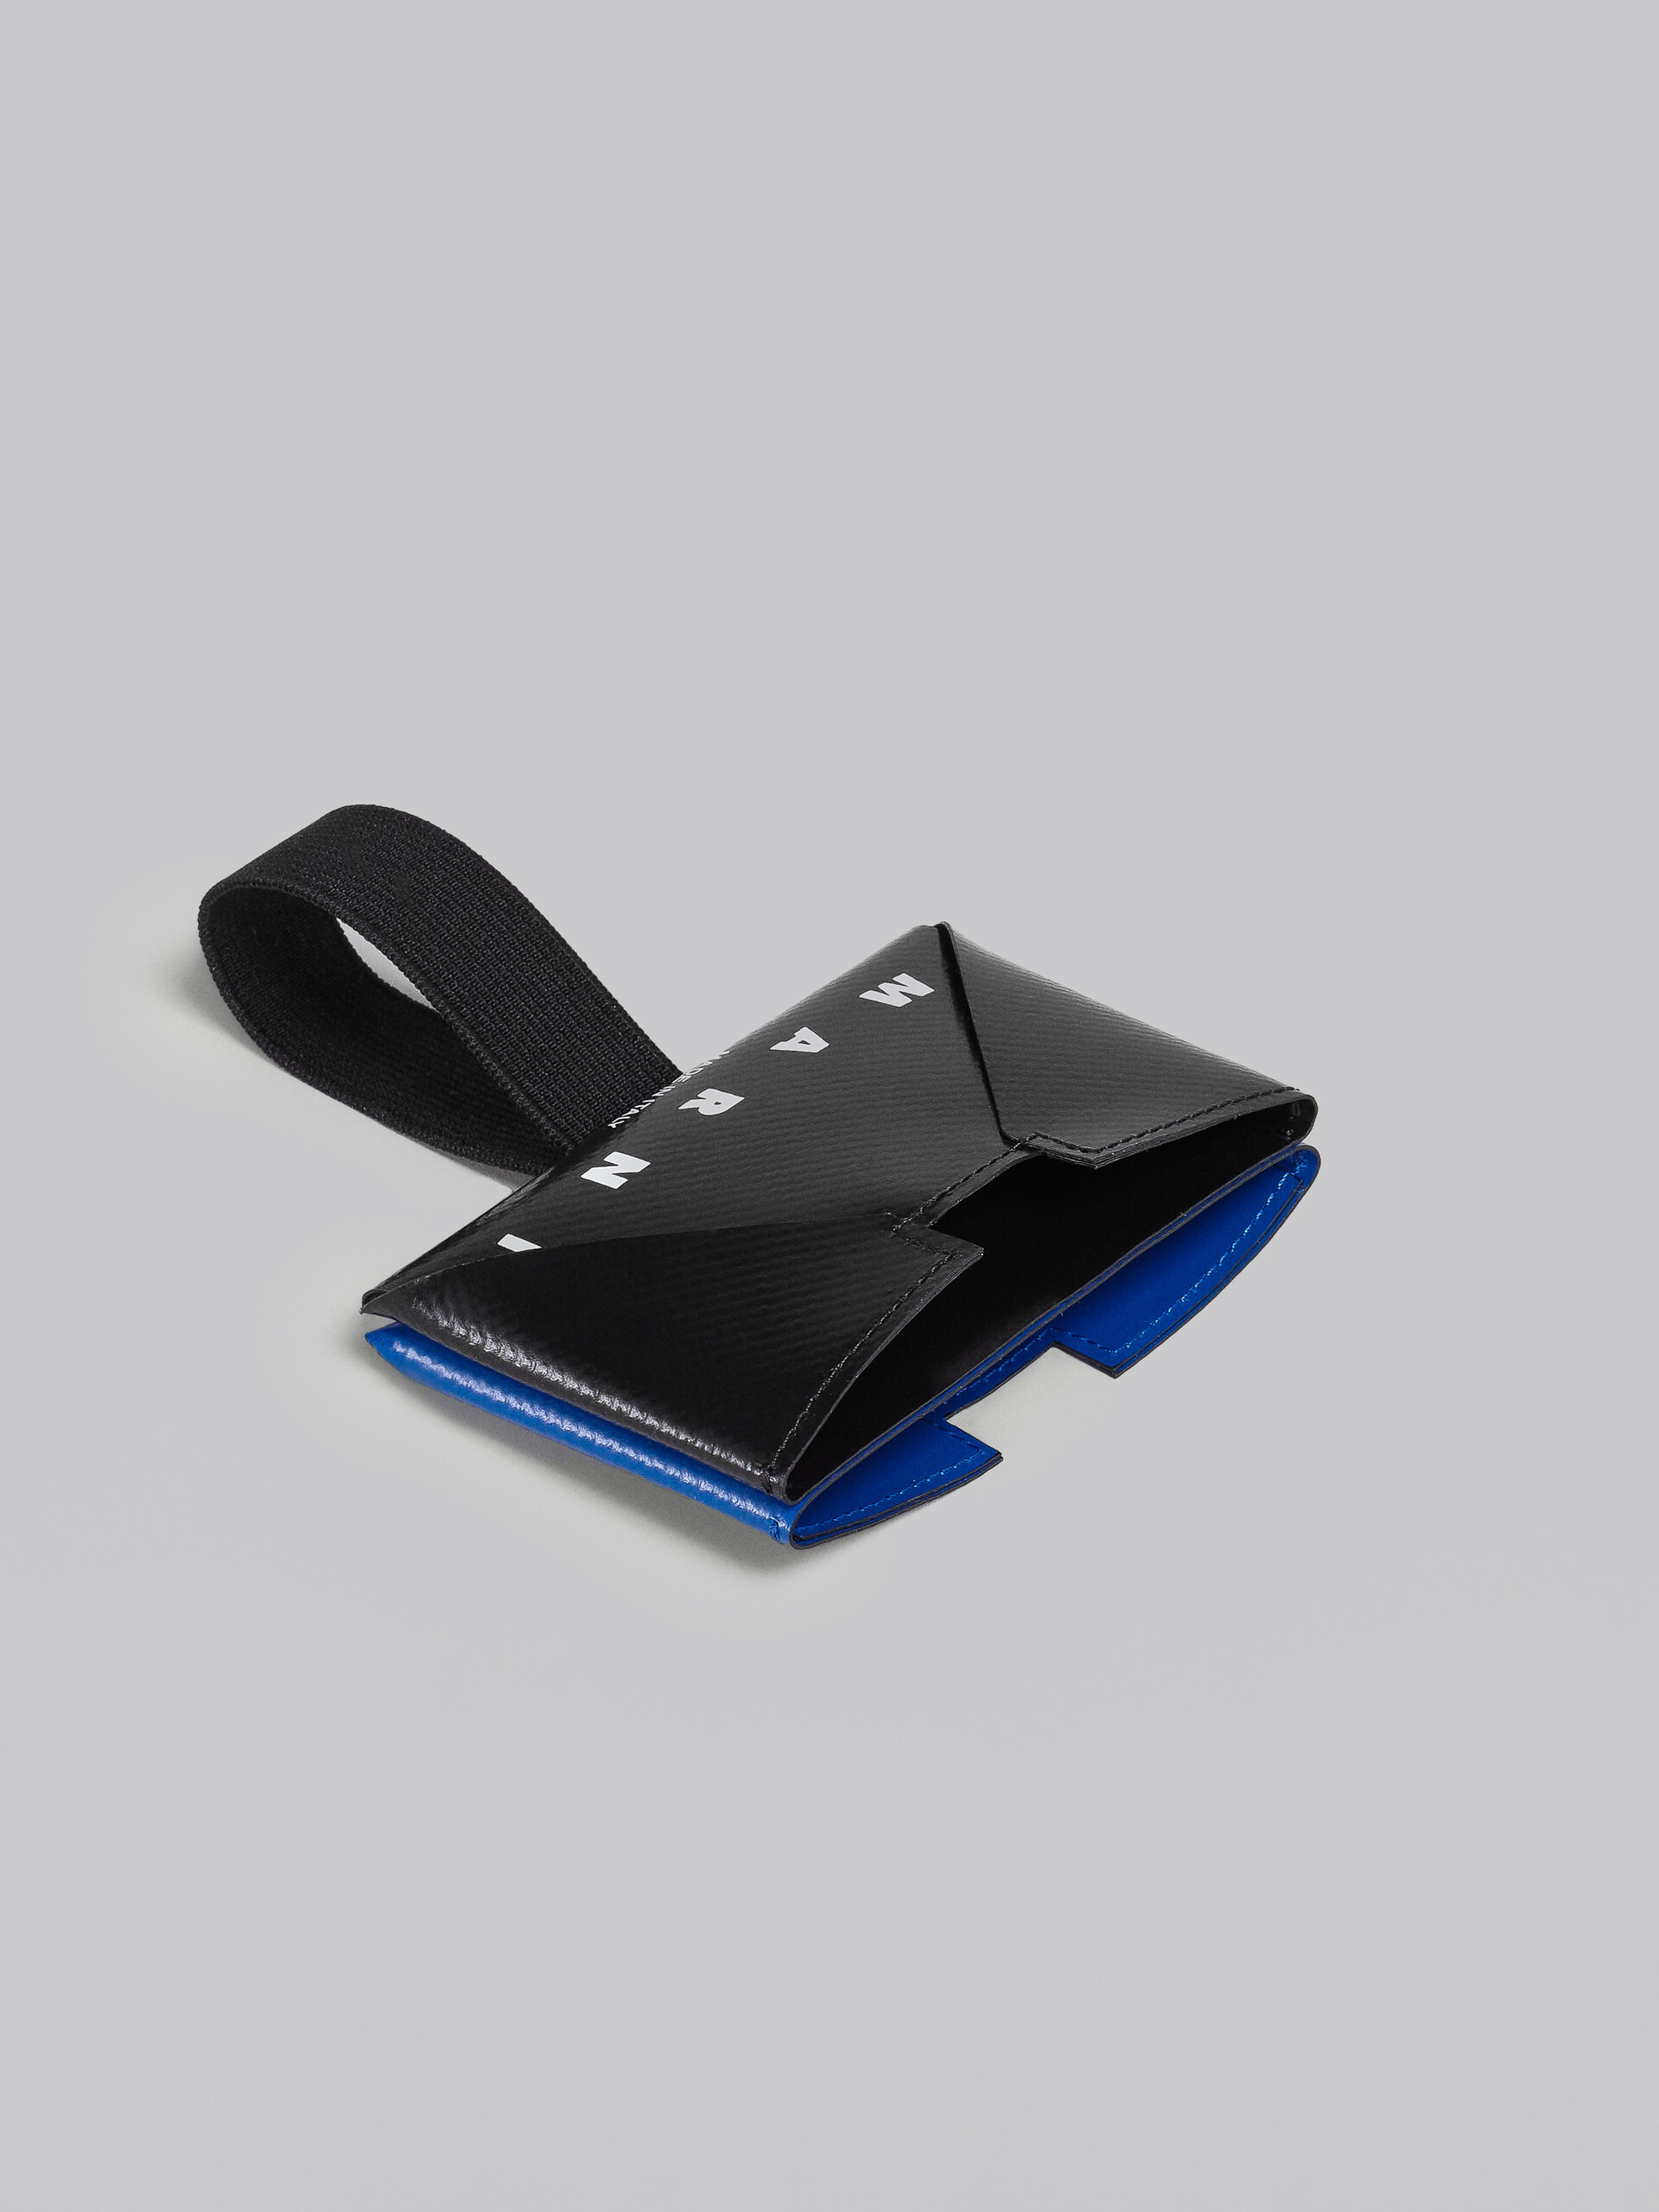 Portacarte in PVC nero e blu - Portafogli - Image 2